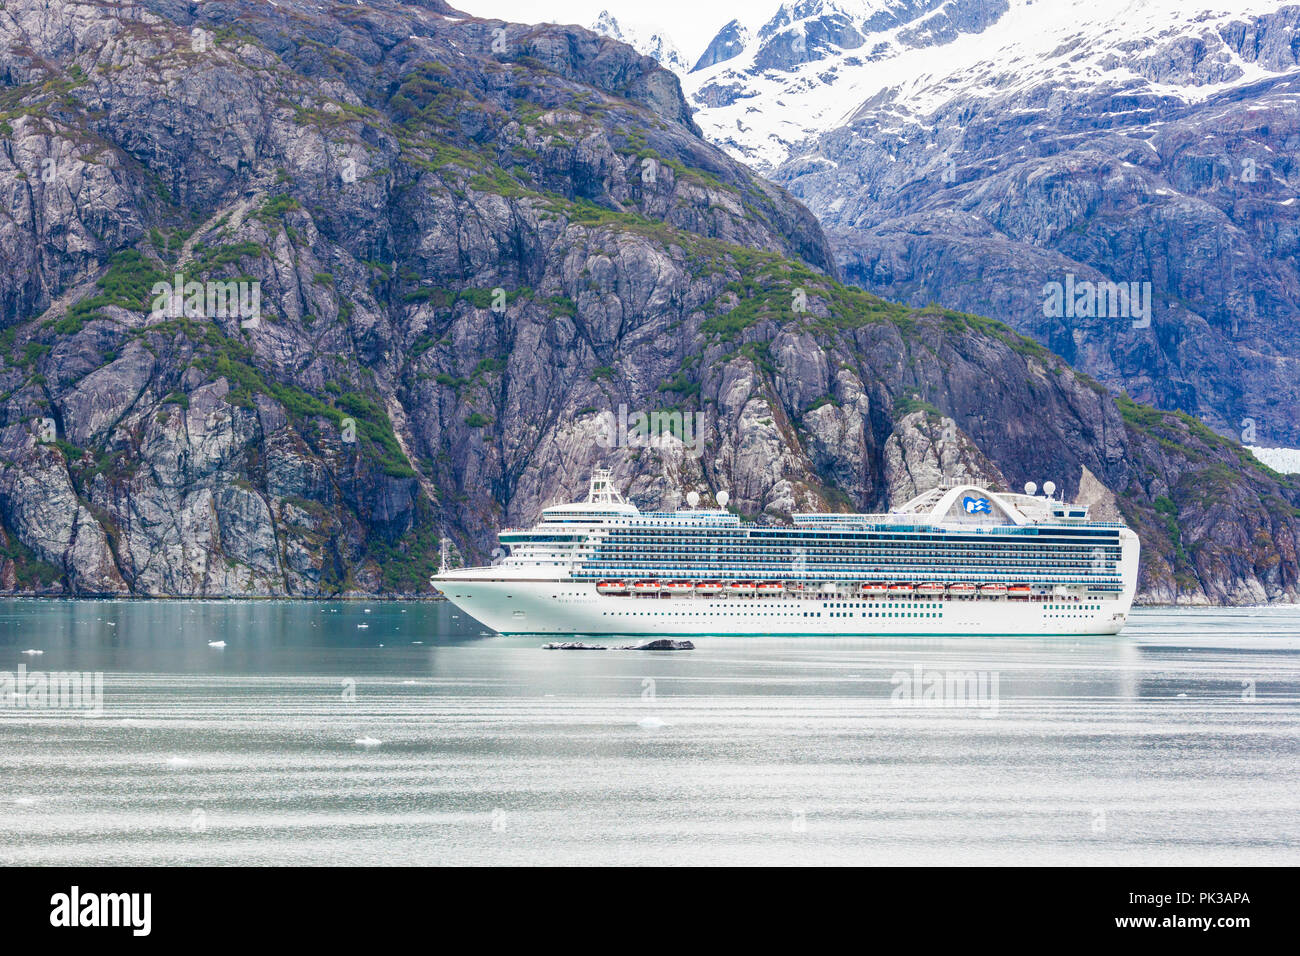 Die Princess Cruises 'Ruby Princess' in der Tarr Einlass des Glacier Bay, Alaska, USA - von einem Kreuzfahrtschiff segeln die Inside Passage gesehen Stockfoto